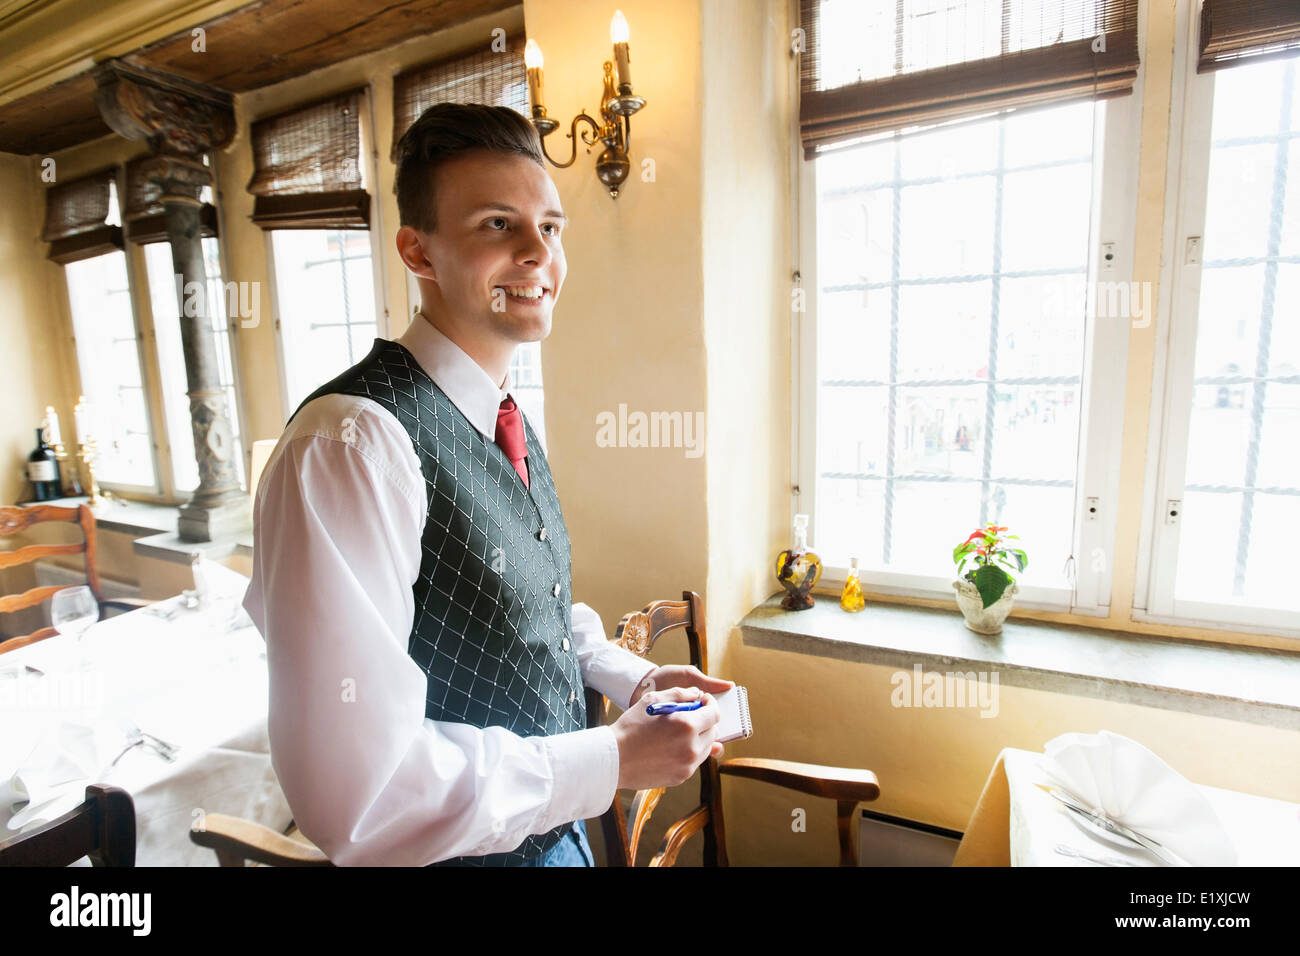 Vue de côté de serveur avec le bloc-notes smiling in restaurant Photo Stock  - Alamy